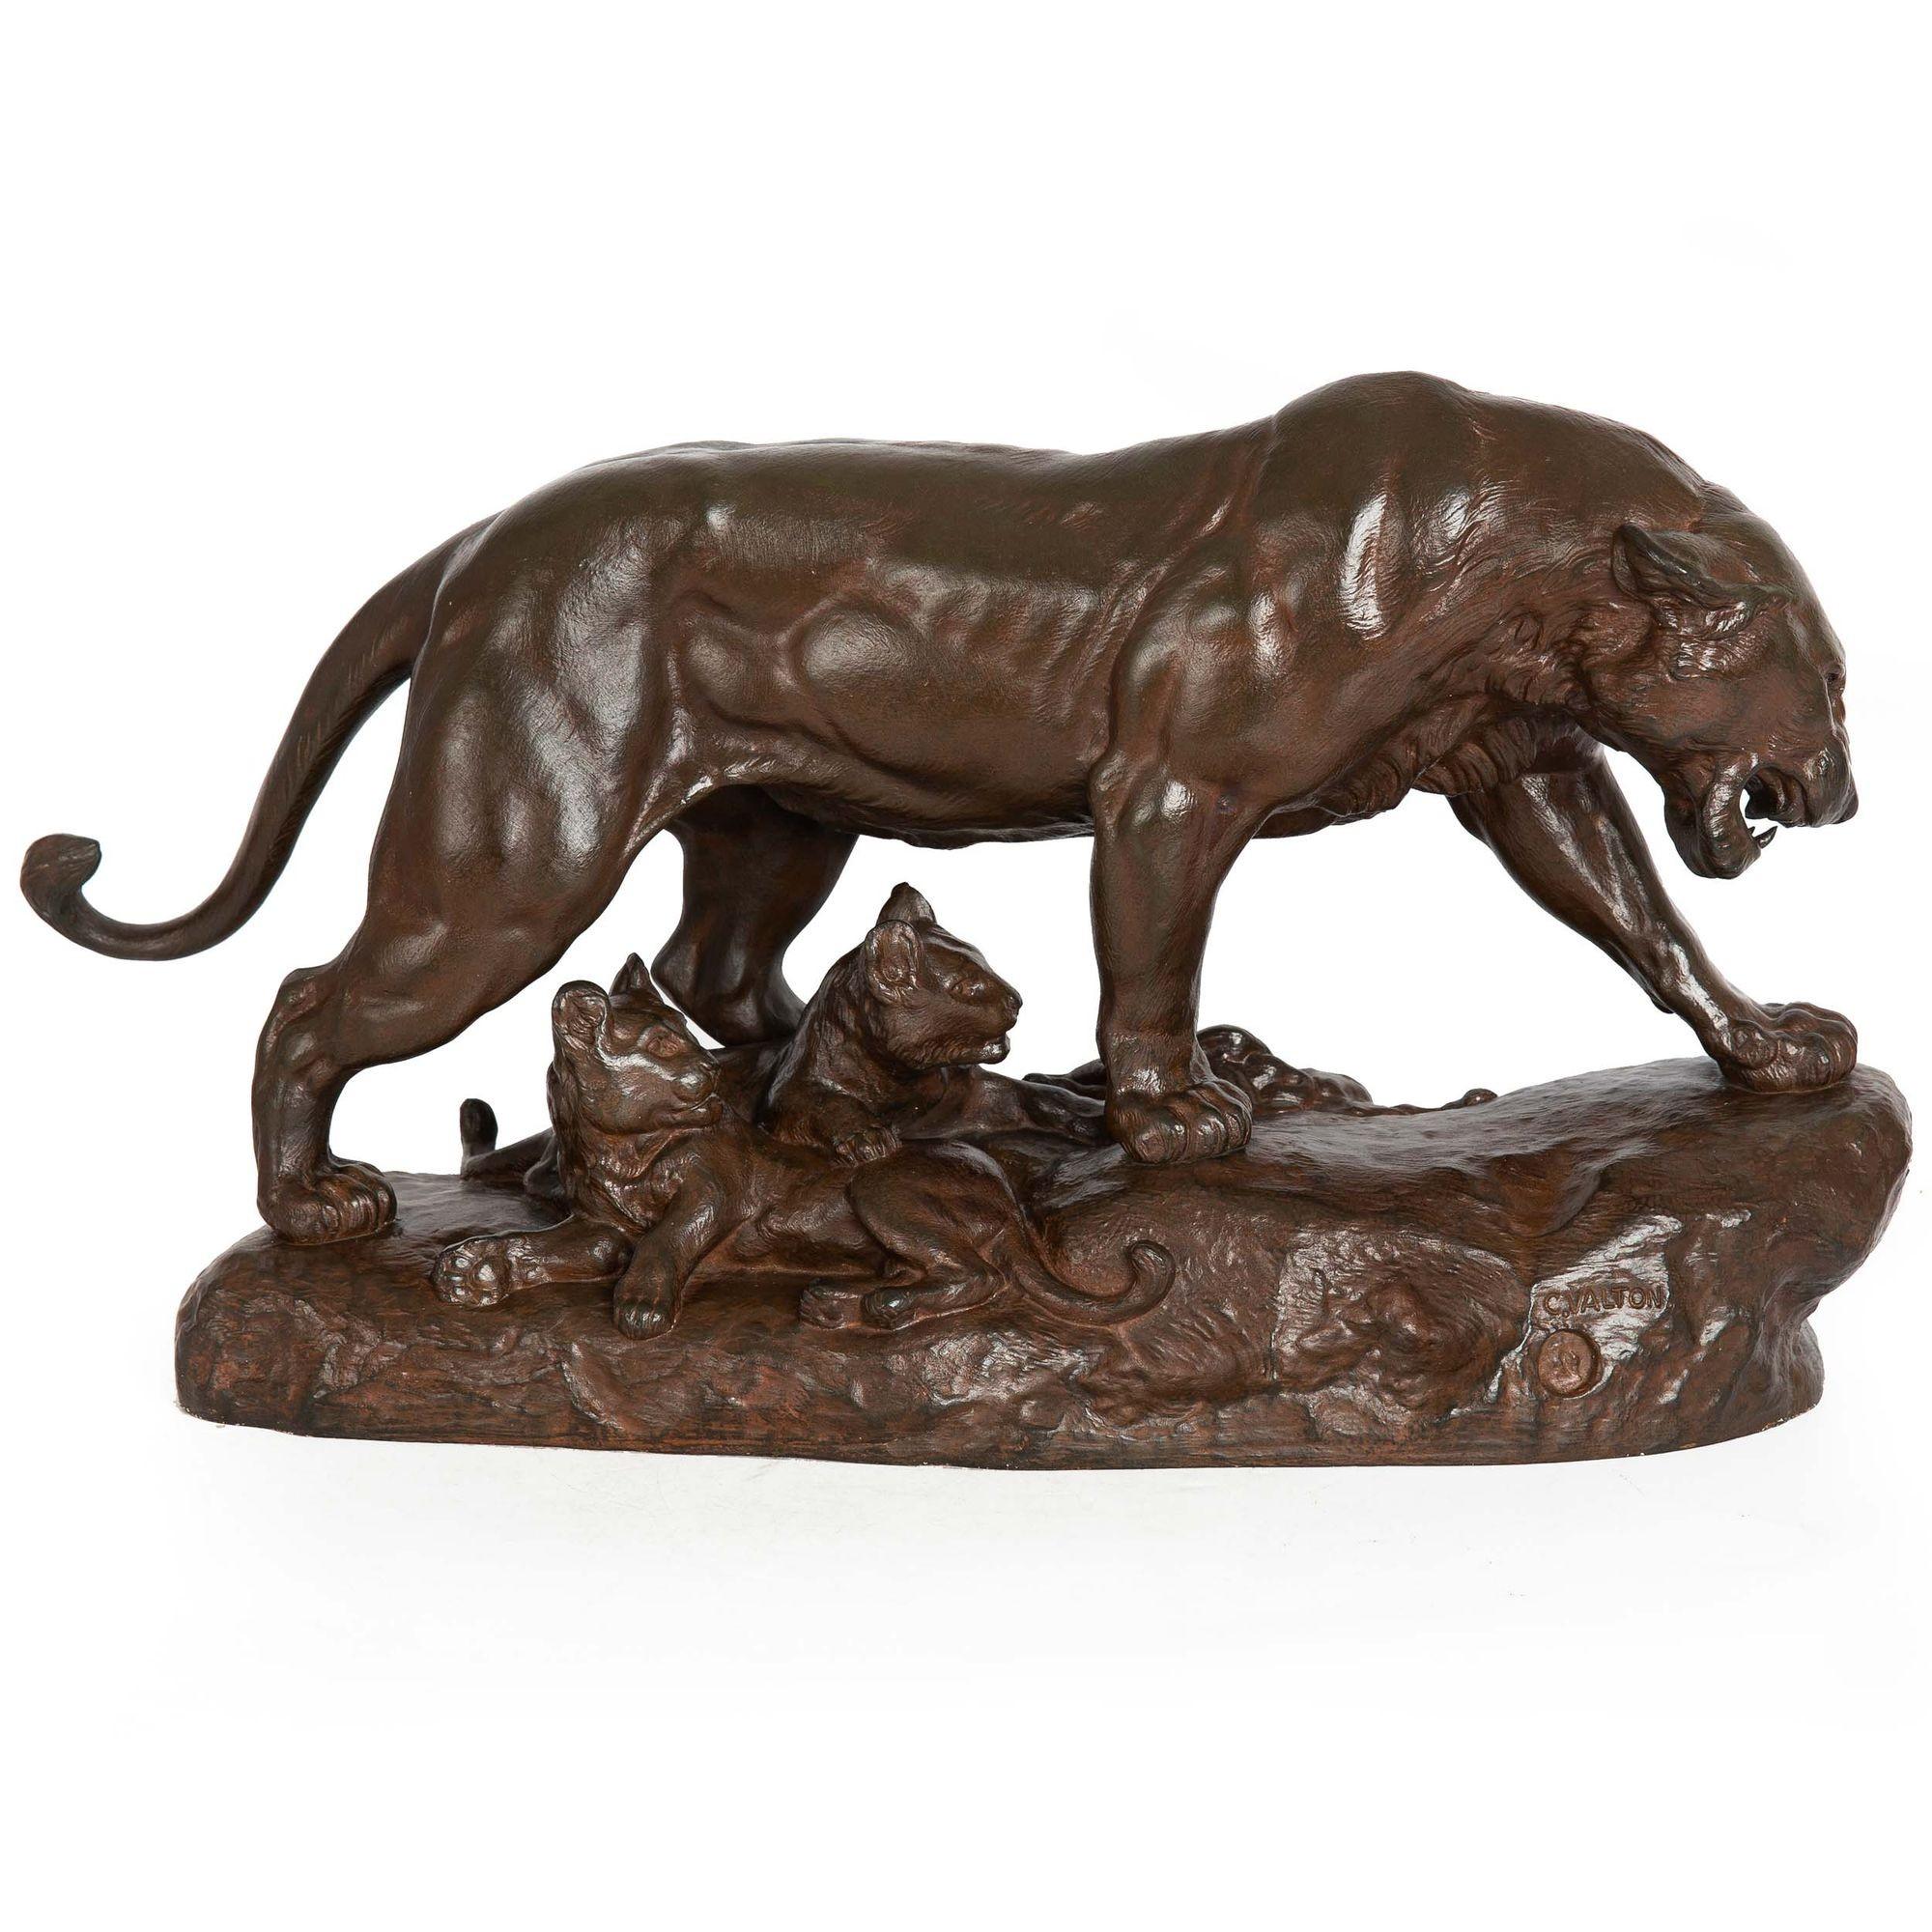 CHARLES VALTON
Français, 1851-1913

Lionne et deux lionceaux

Bronze patiné brun rougeâtre  Signé 